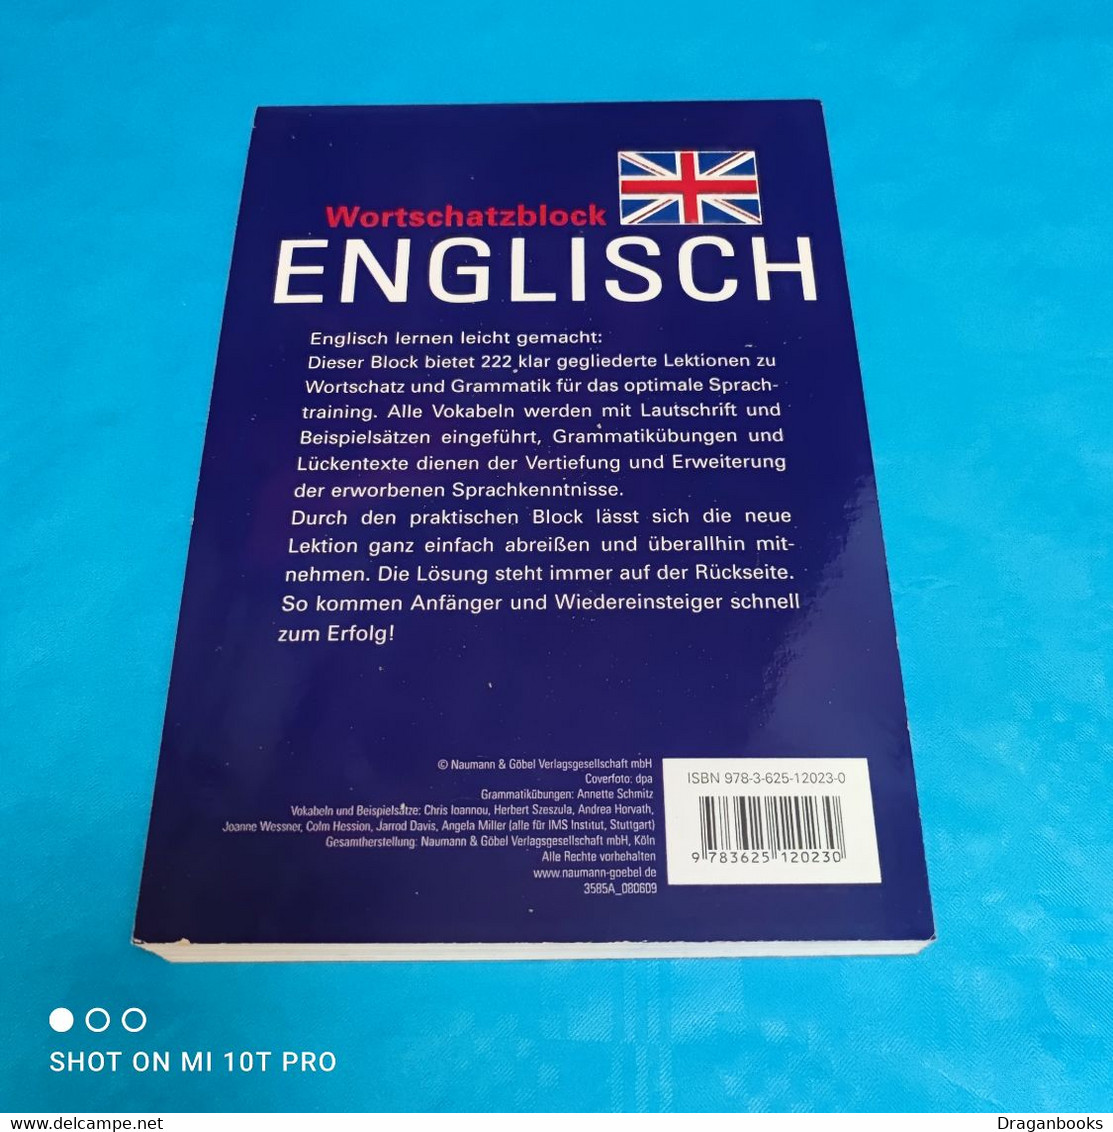 Wortschatzblock Englisch - Woordenboeken